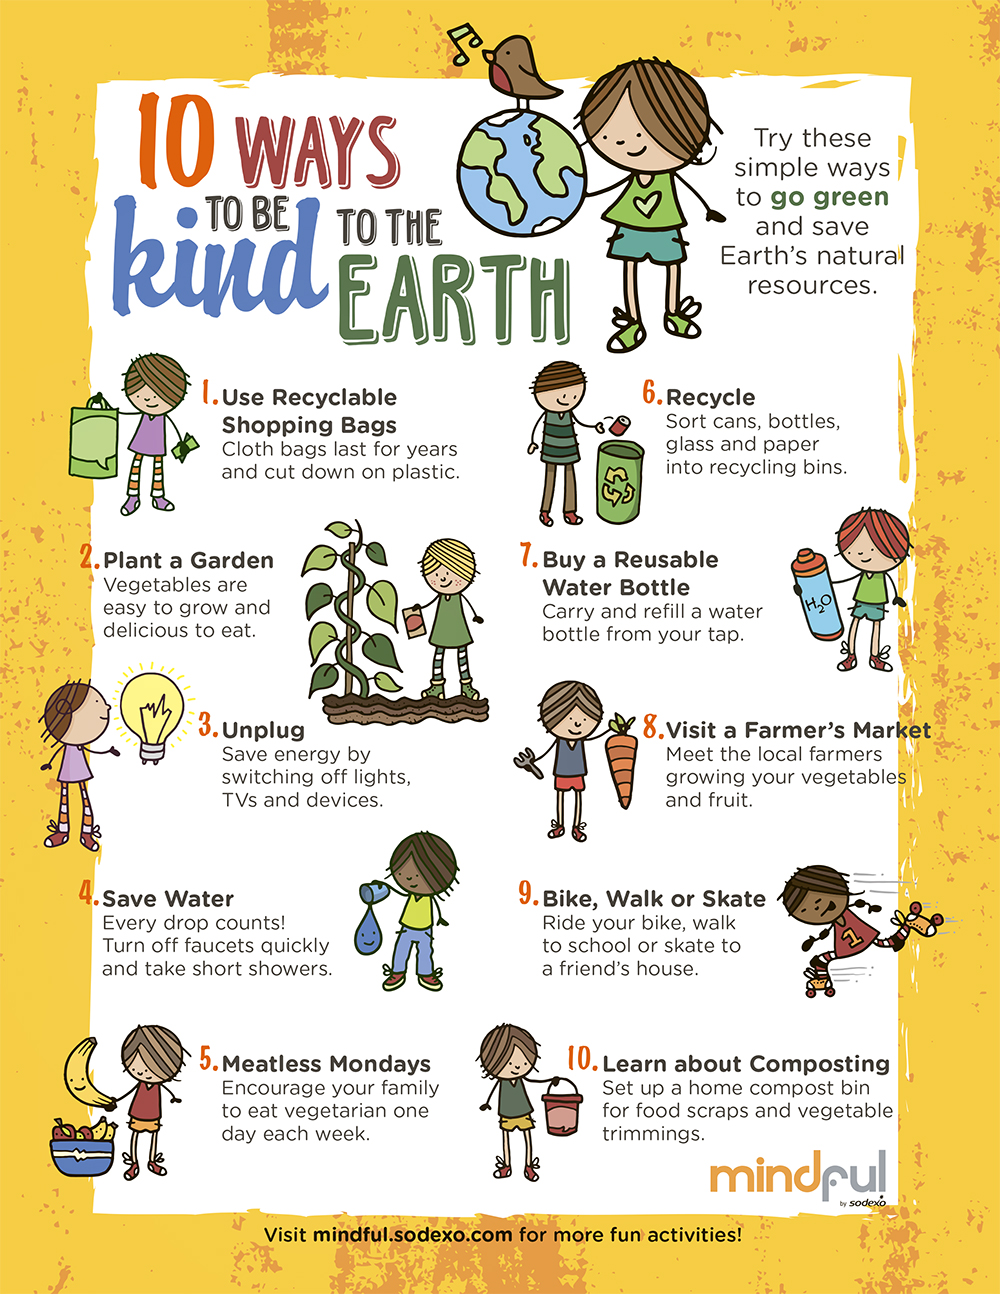 Kids for Saving Earth Water Bottles - Kids for Saving Earth